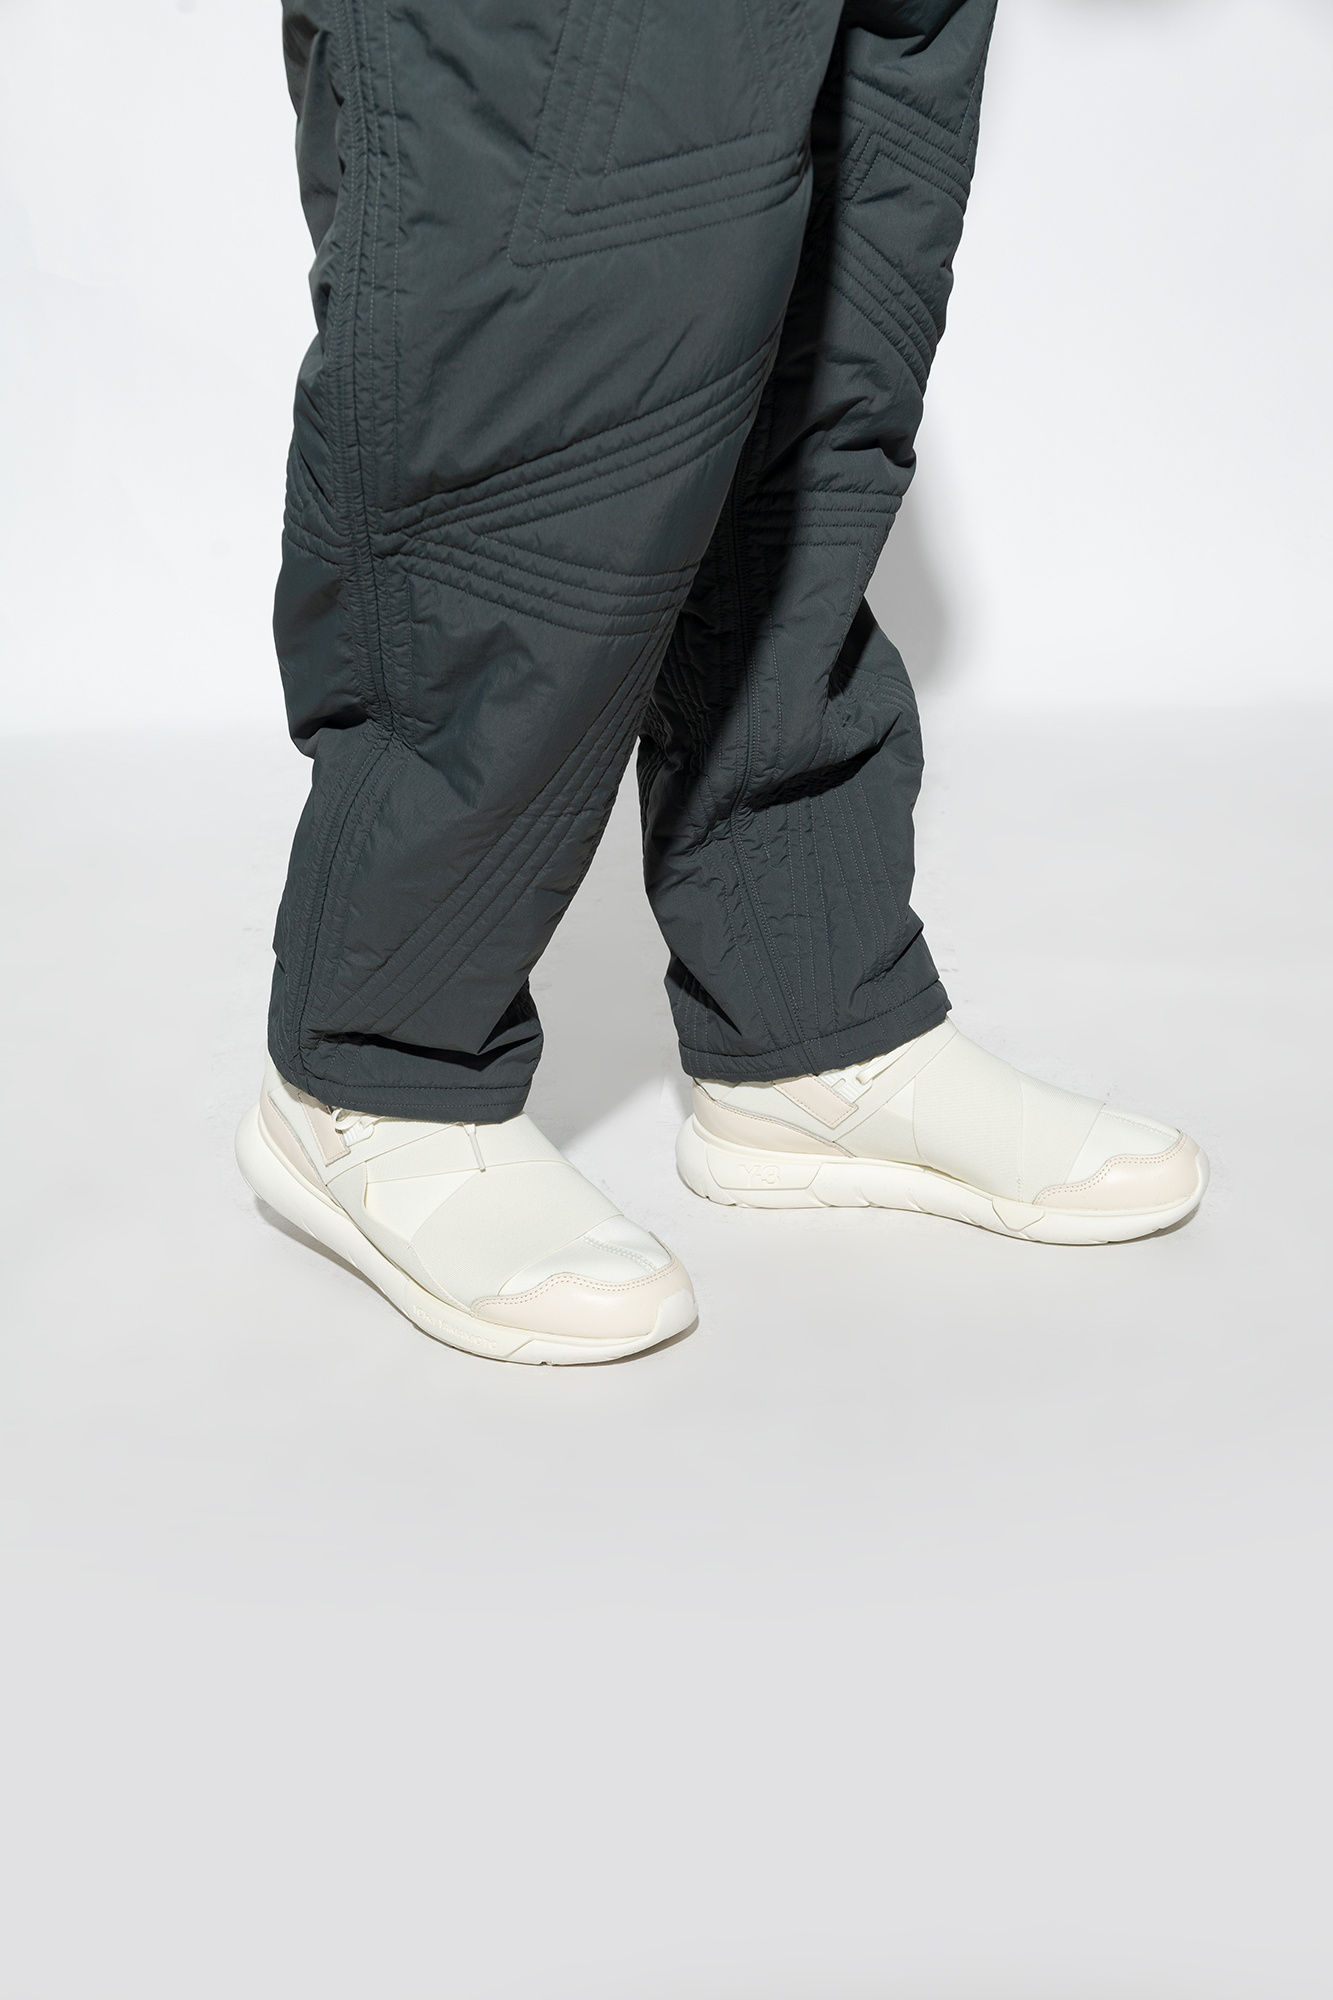 zapatillas de running Under Armour asfalto tope amortiguación talla 42 blancas ‘Qasa’ sneakers